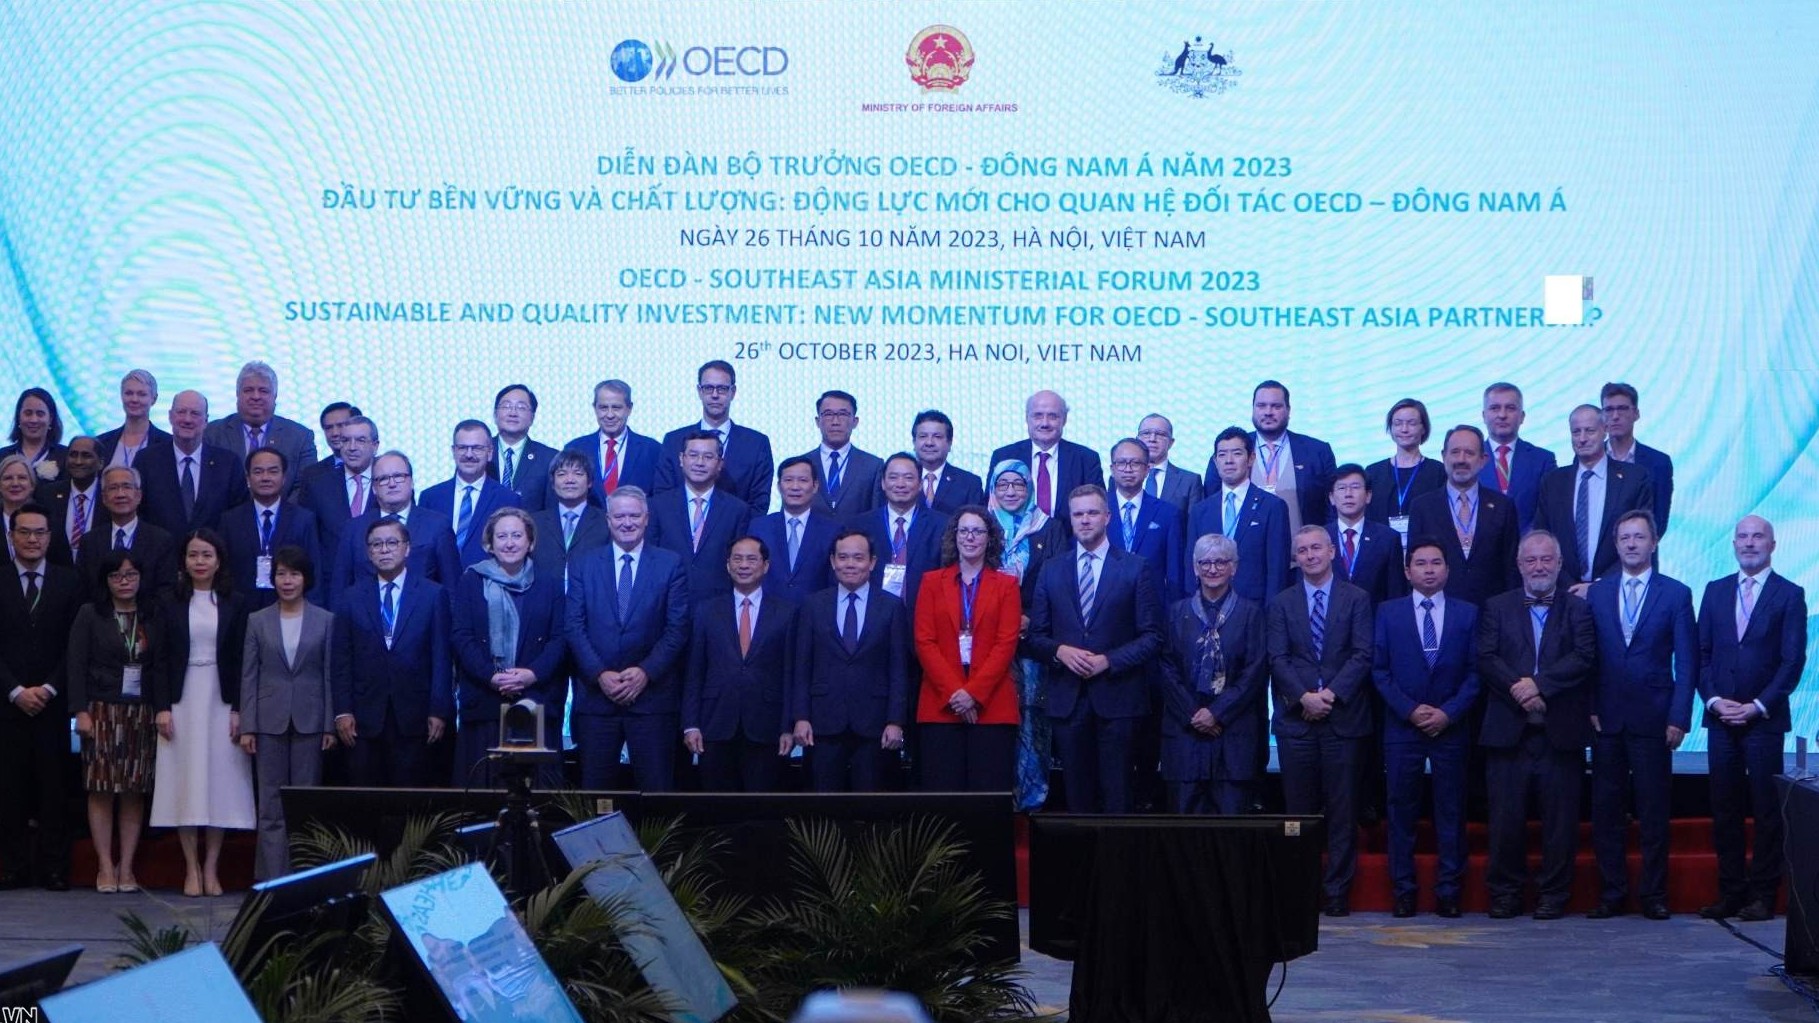 OECD cam kết hỗ trợ các nước Đông Nam Á chuyển đổi xanh, chuyển đổi số hướng tới phát triển bền vững